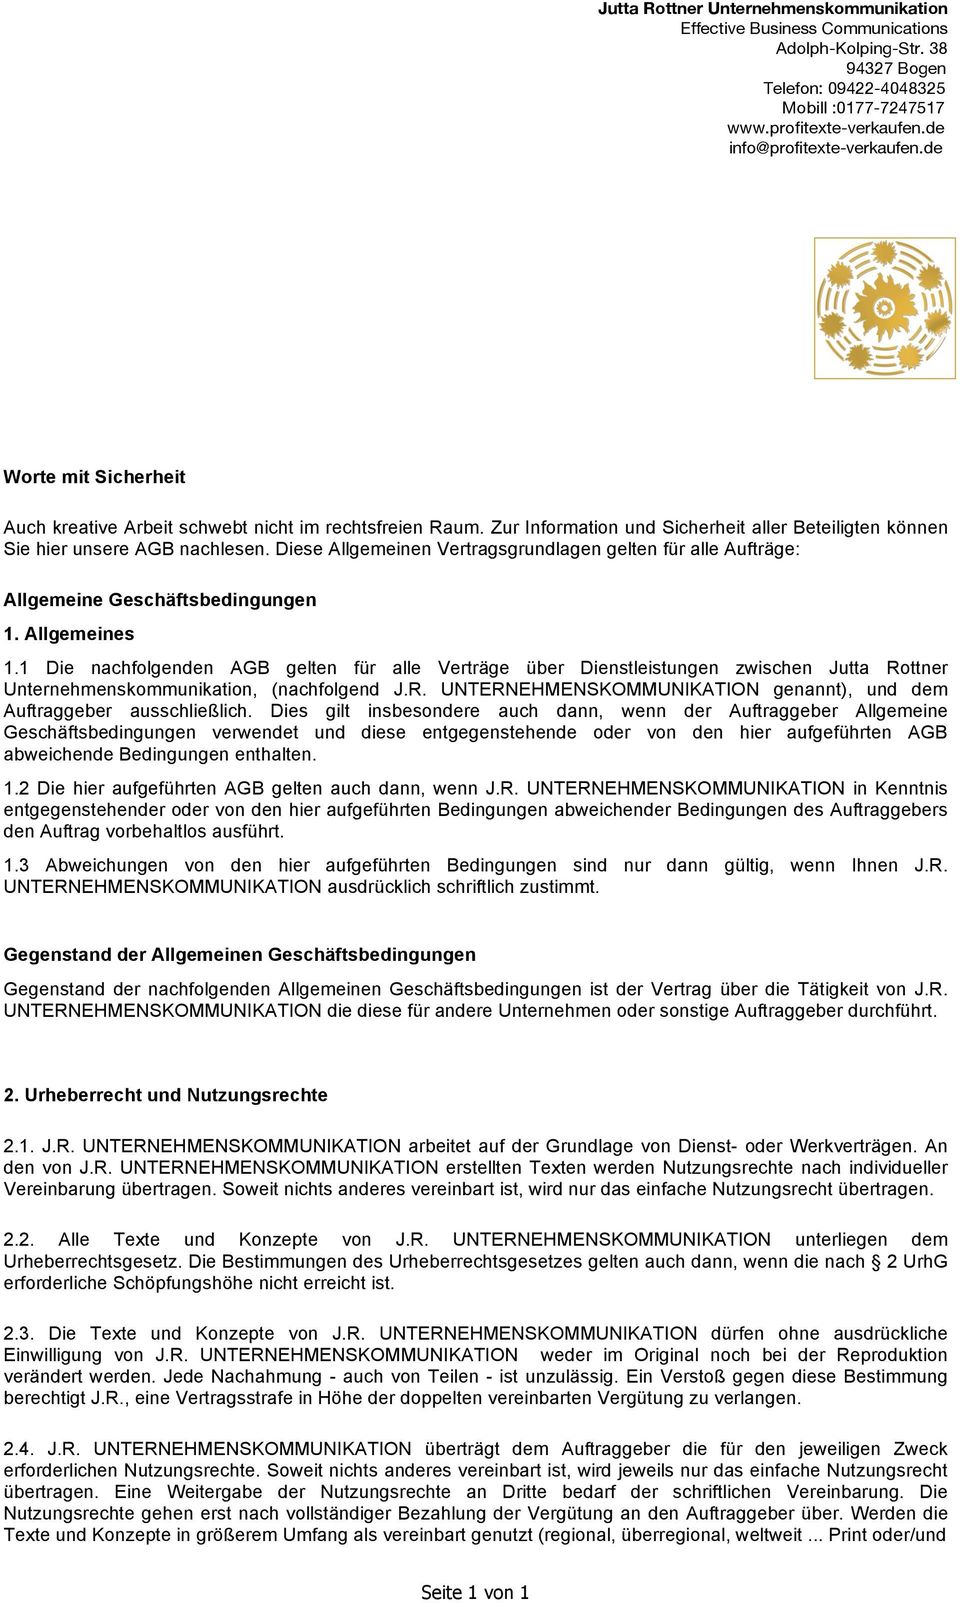 1 Die nachfolgenden AGB gelten für alle Verträge über Dienstleistungen zwischen Jutta Rottner Unternehmenskommunikation, (nachfolgend J.R. UNTERNEHMENSKOMMUNIKATION genannt), und dem Auftraggeber ausschließlich.